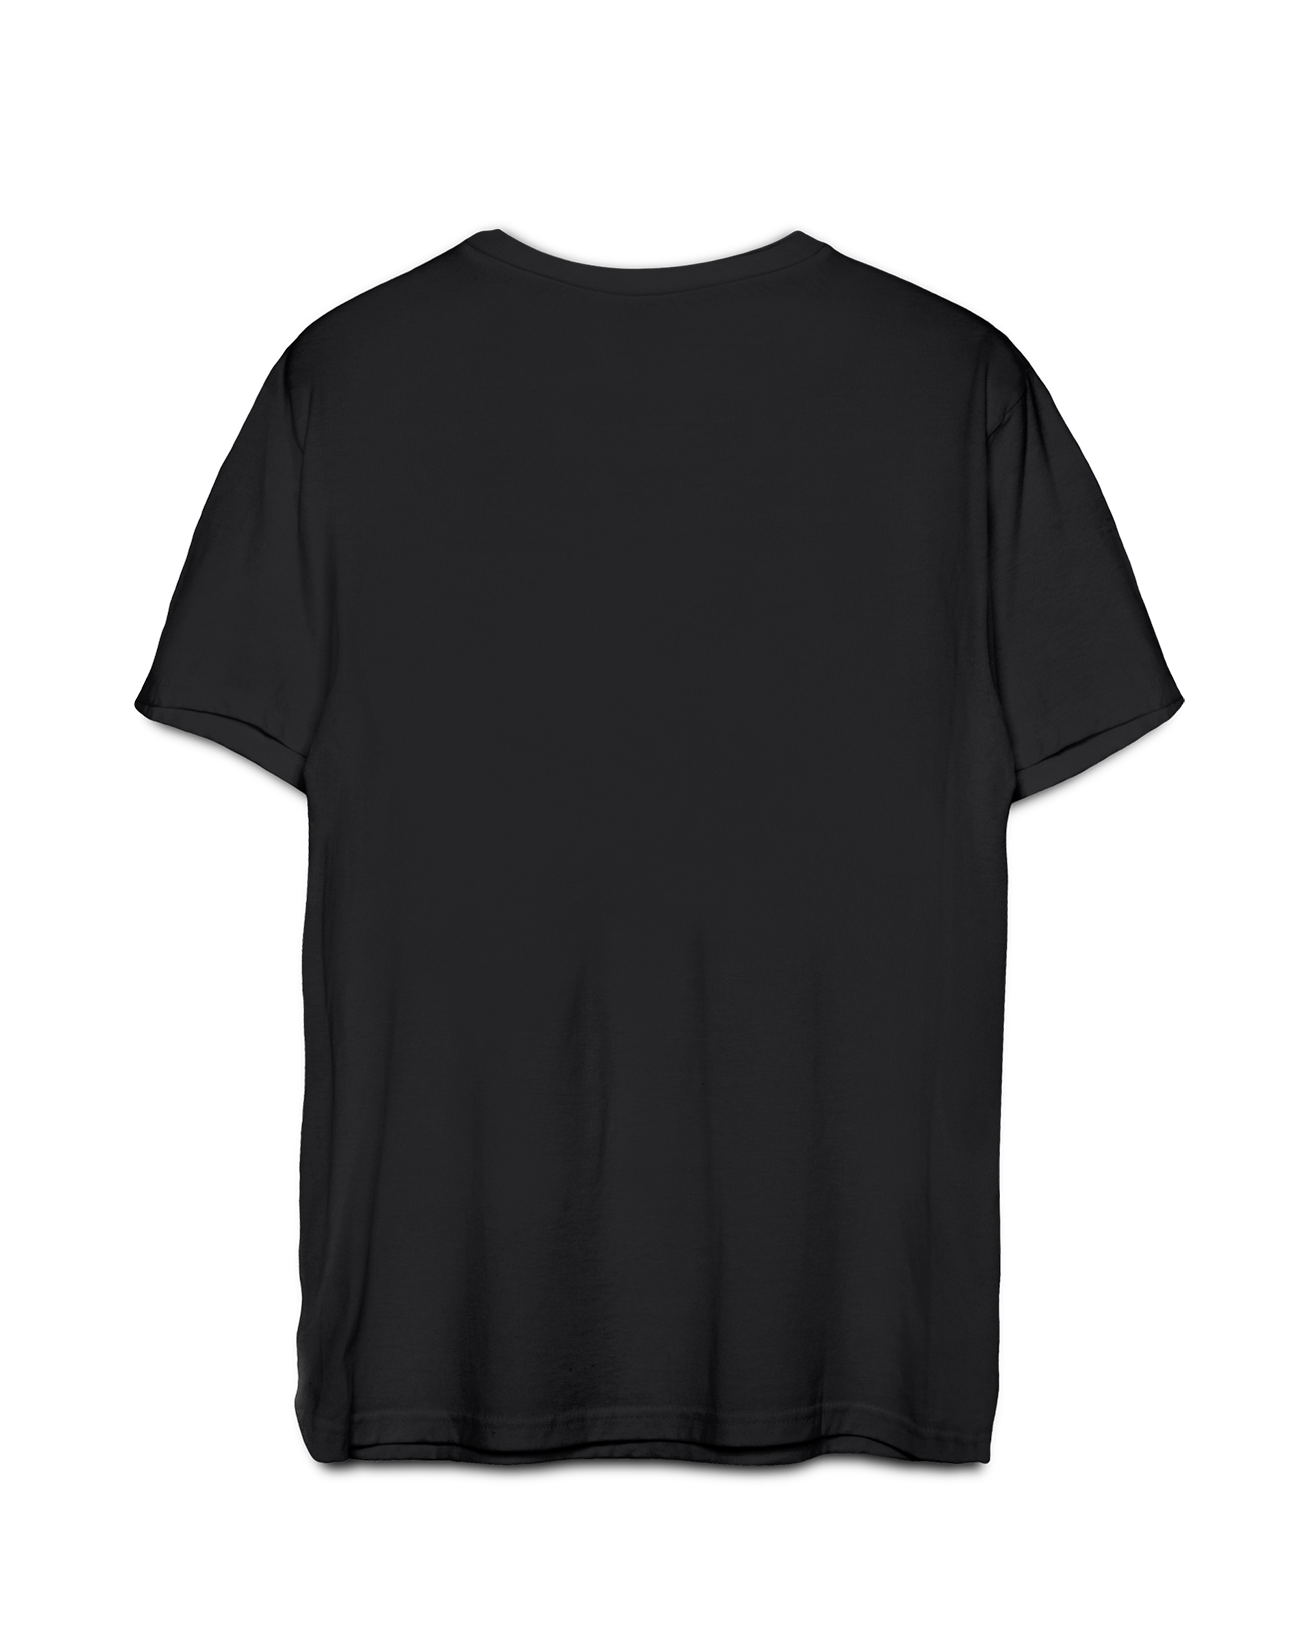 Let's Rock it black unisex t-shirt